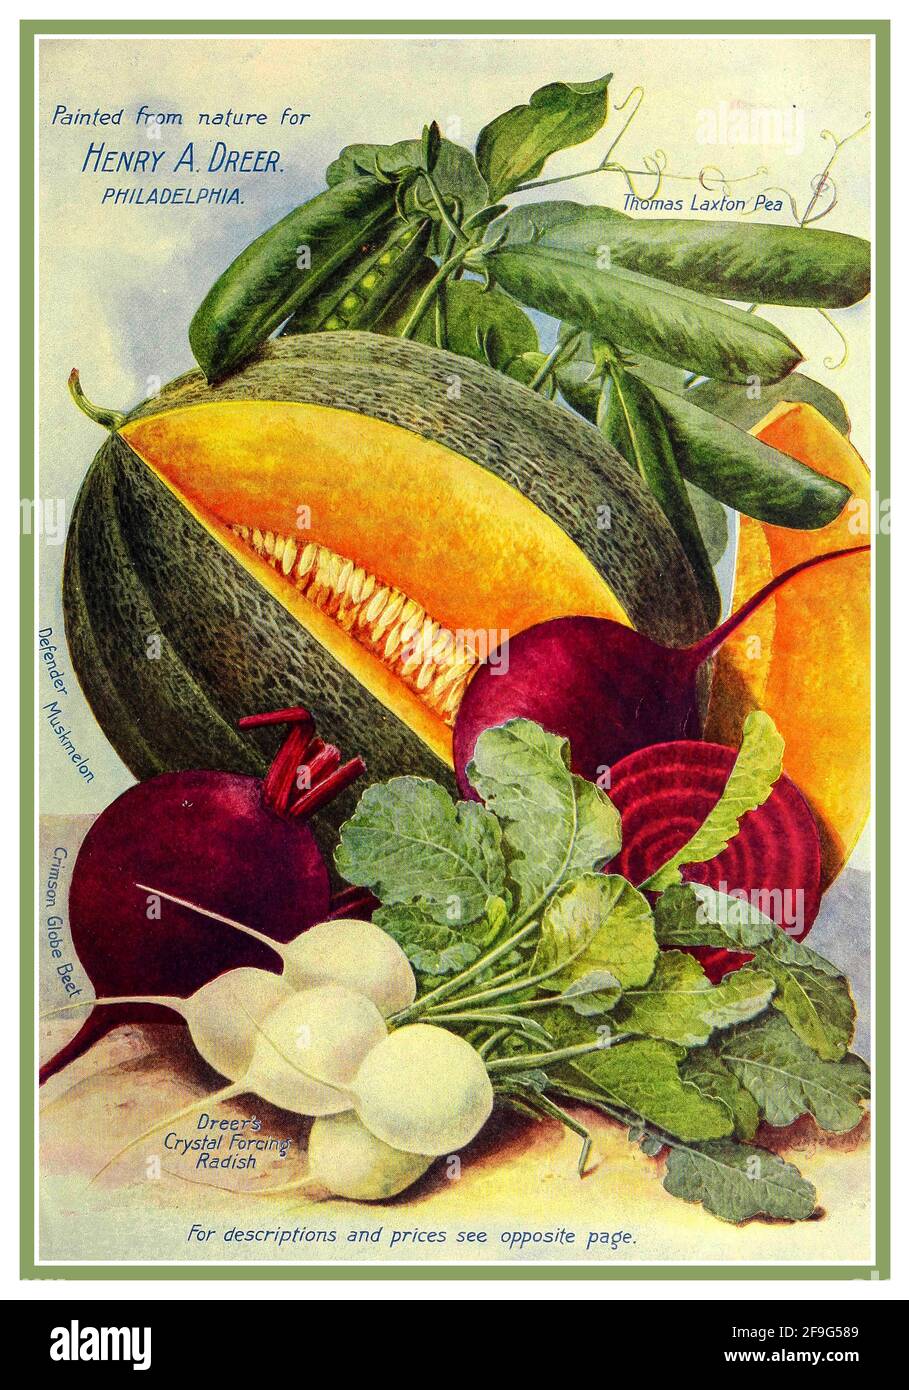 Illustrazione grafica di Henry Dreer Seed Packet di vintage del 1900 per Coltiva le tue verdure 1904' dipinte dalla natura per Henry Dreer Philadelphia USA Foto Stock